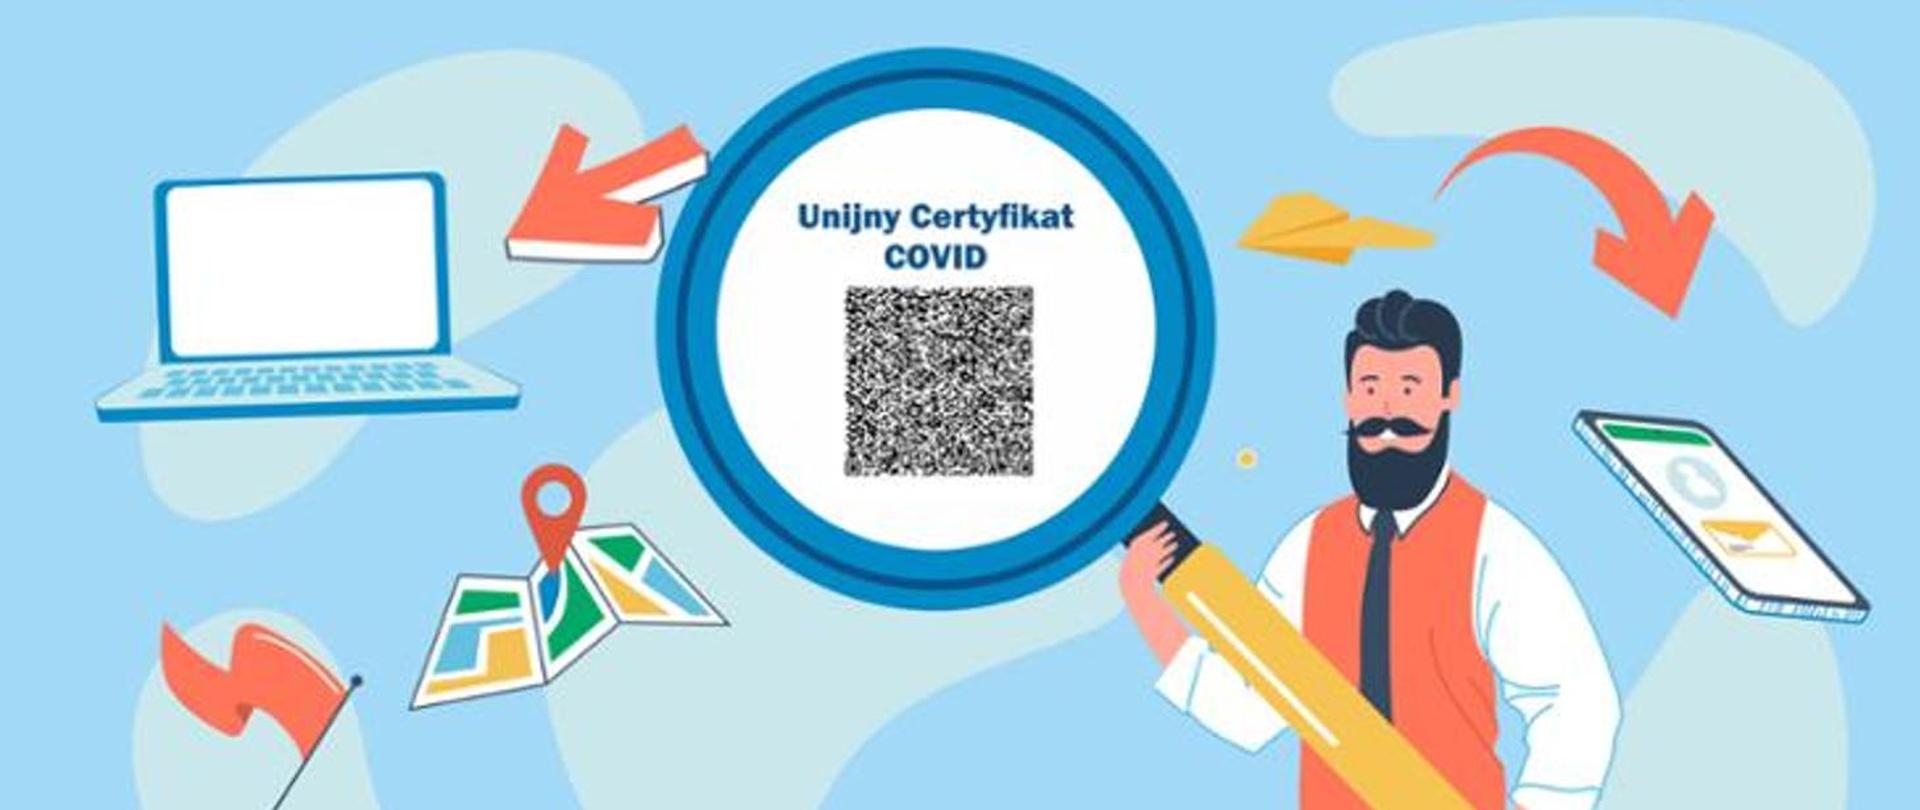 Infografika przedstawiająca mężczyznę z brodą trzymającego ogromną lupę ukazującą kod QR - Unijny Certyfikat COVID. Certyfikat można mieć w komputerze, telefonie komórkowym, na papierze. 